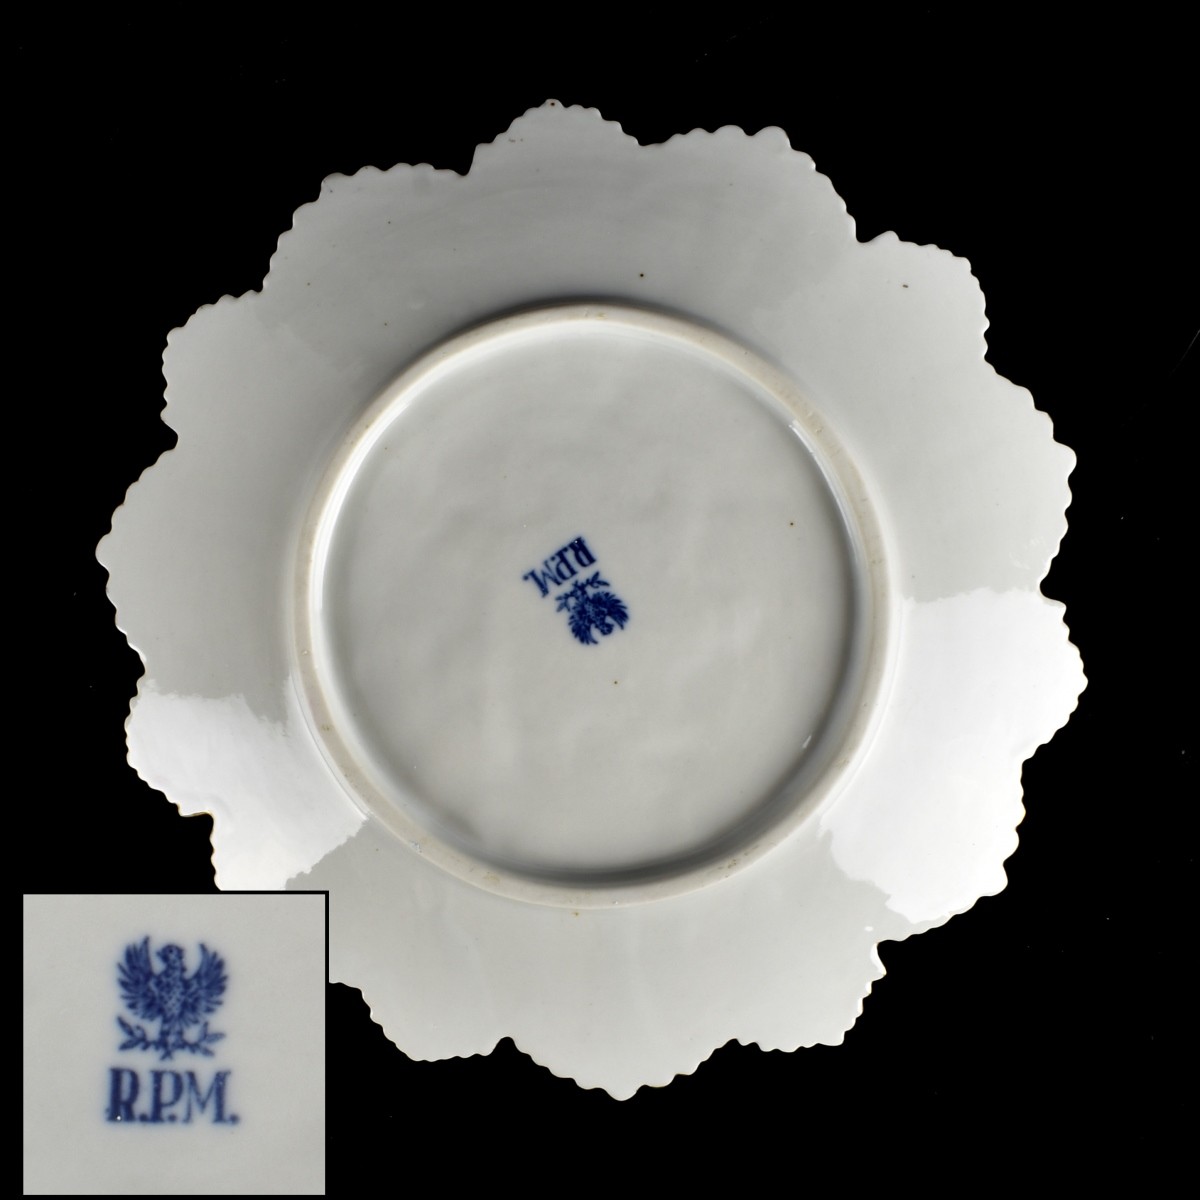 RPM Porcelain Plates